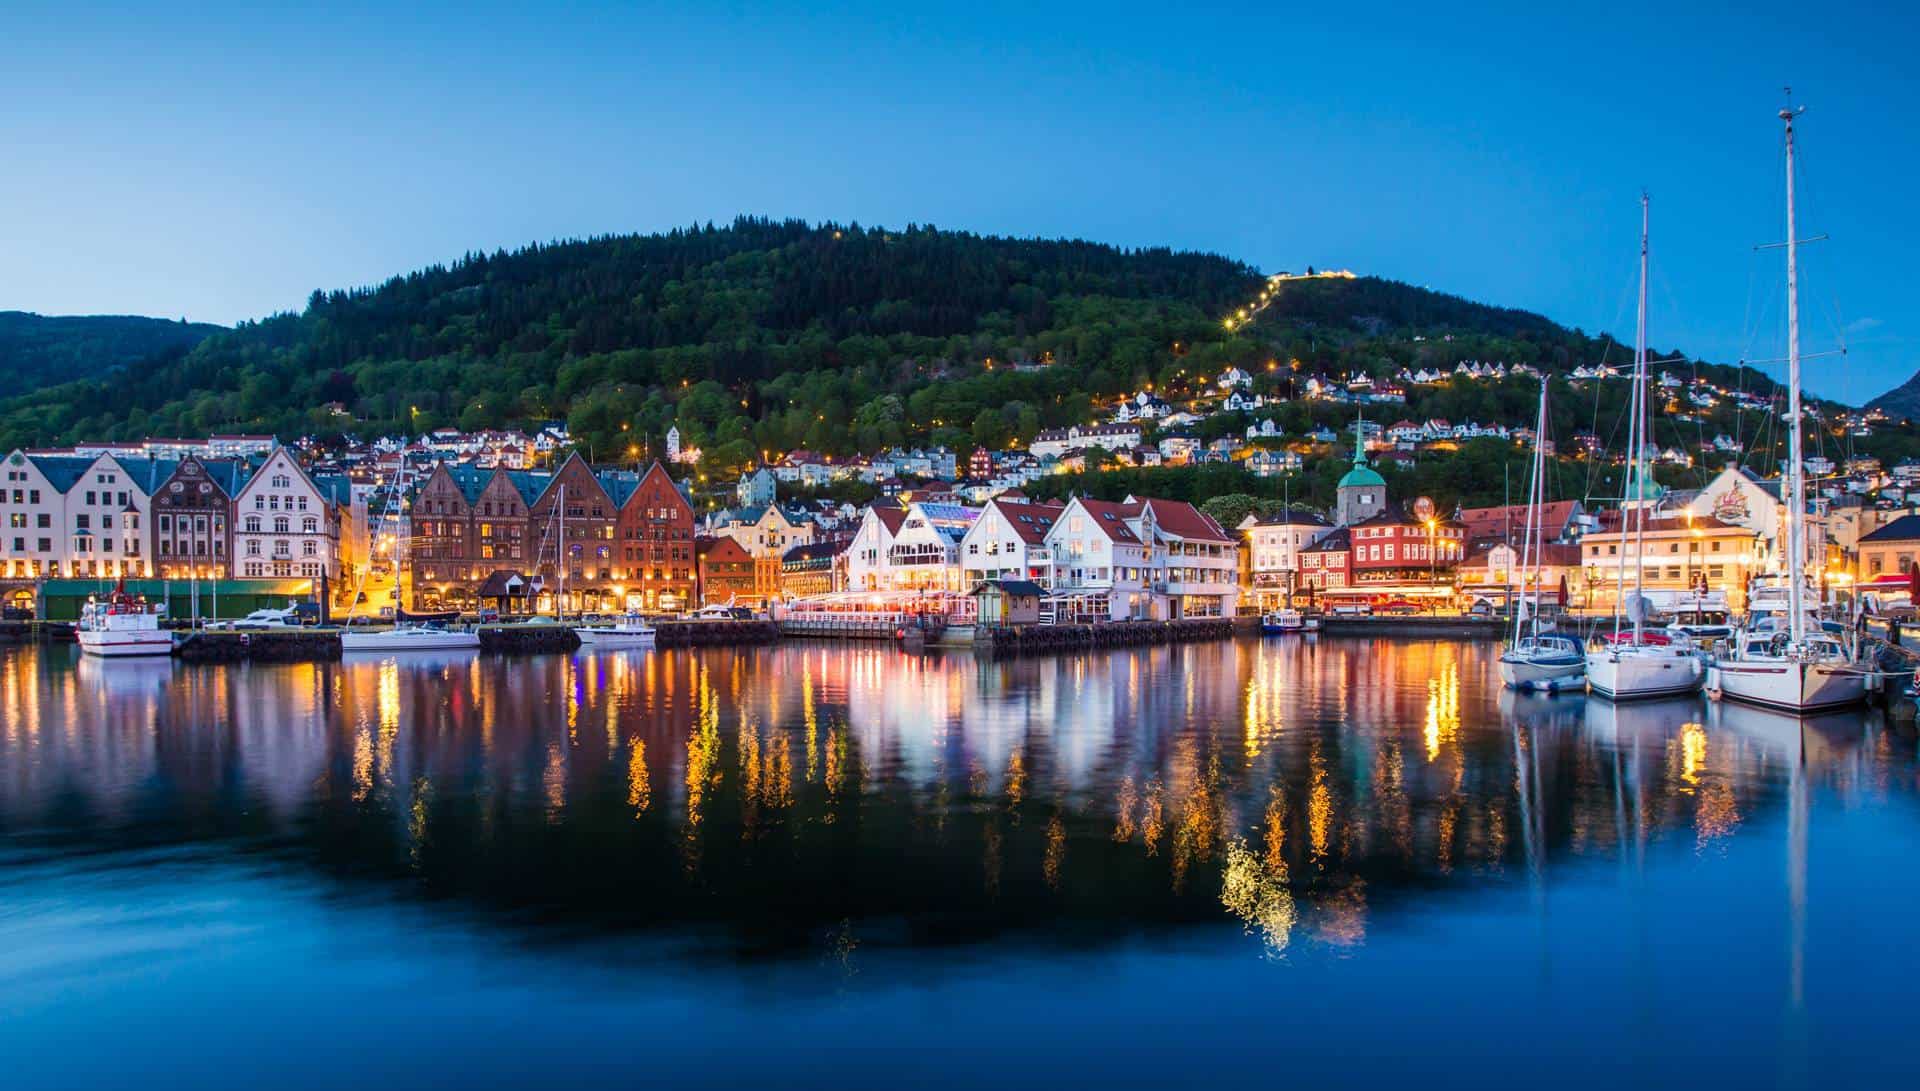 The city of Bergen